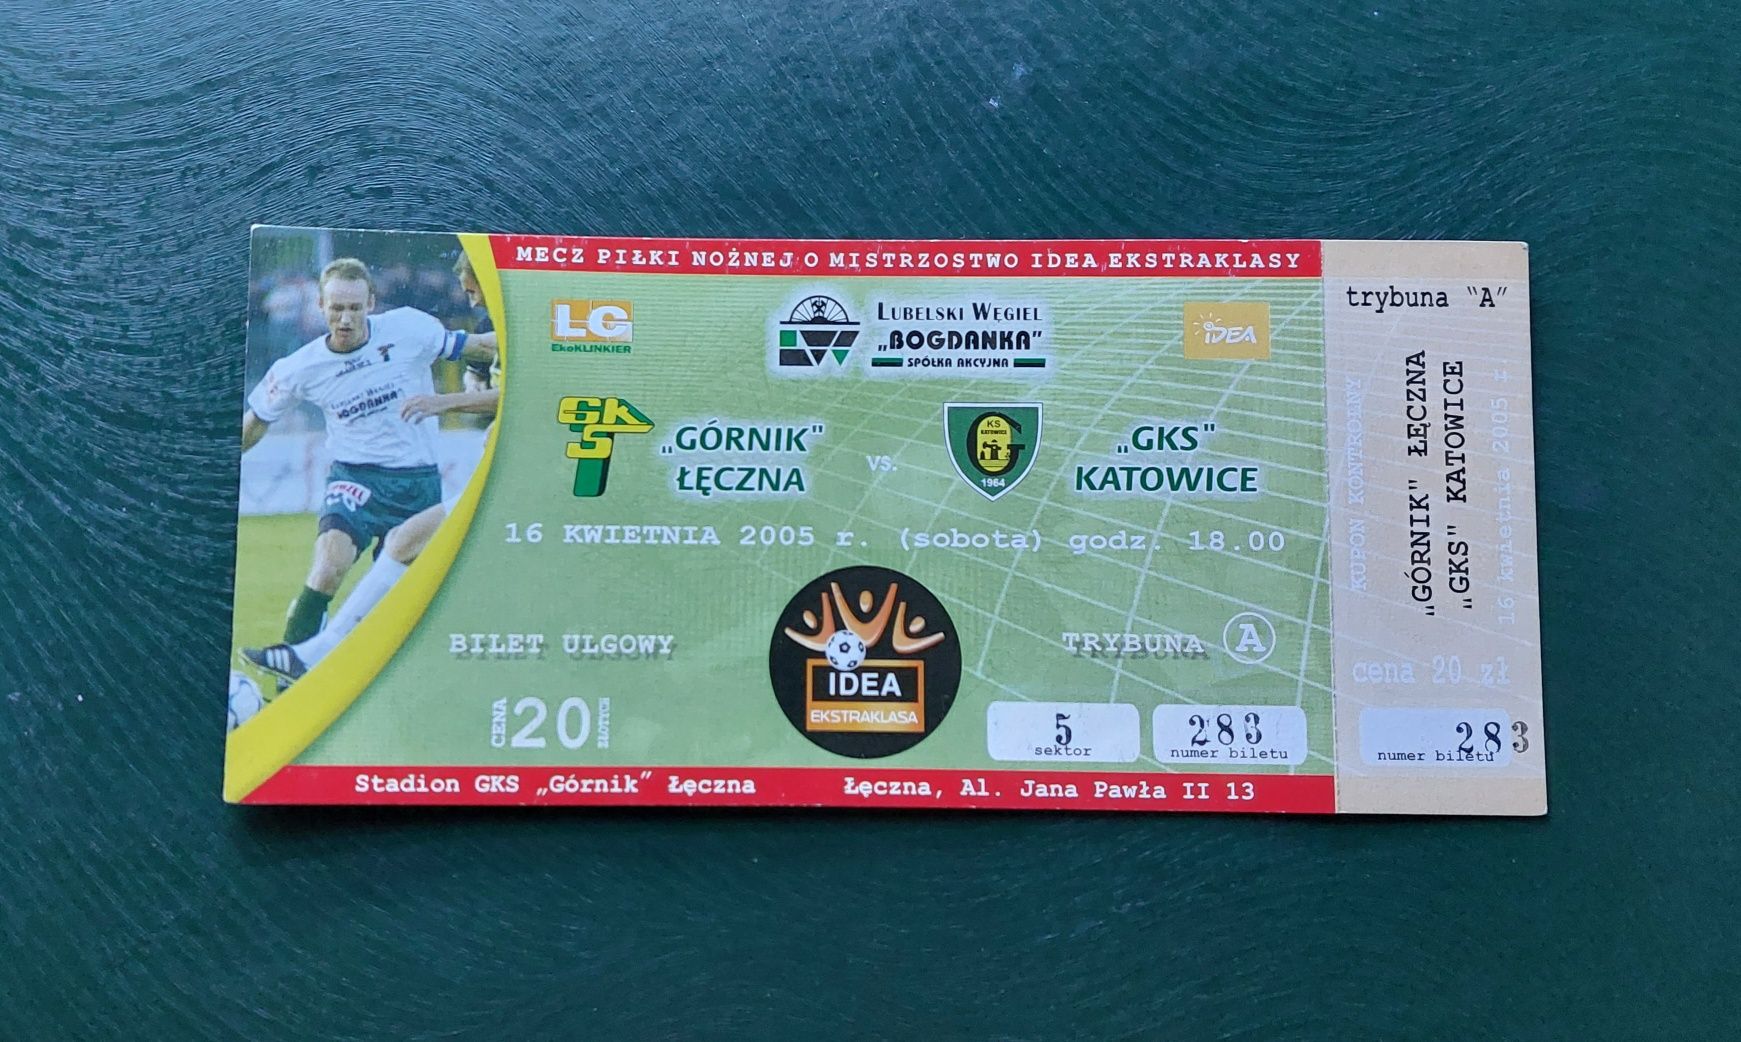 Bilet - Górnik Łęczna vs GKS Katowice